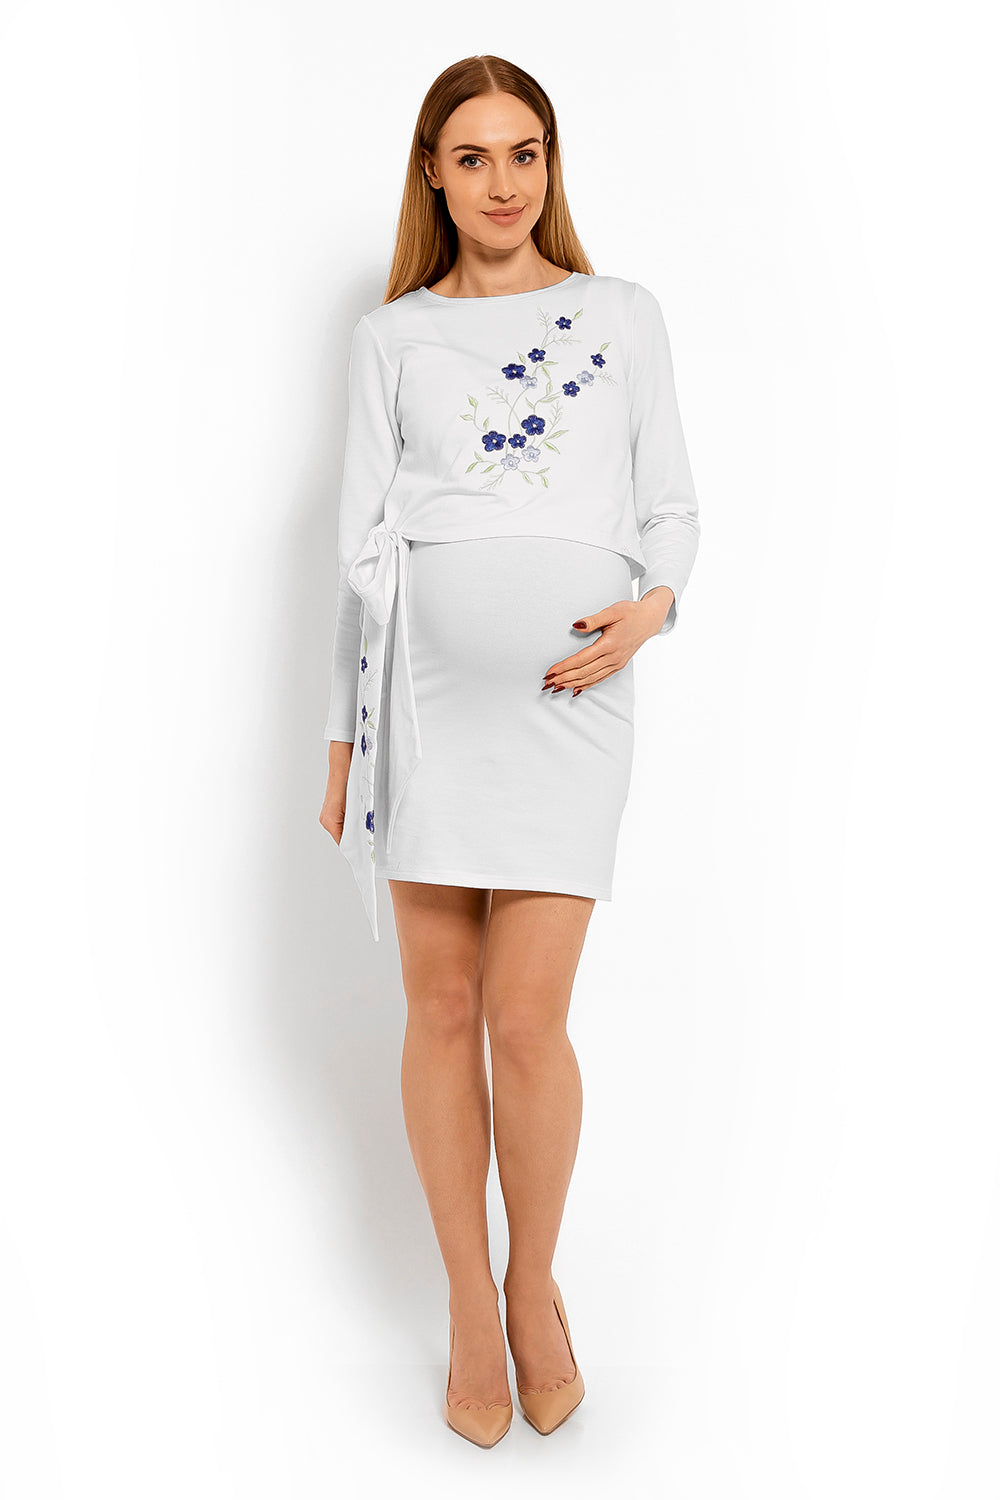 Pregnancy dress model 113212 PeeKaBoo-1